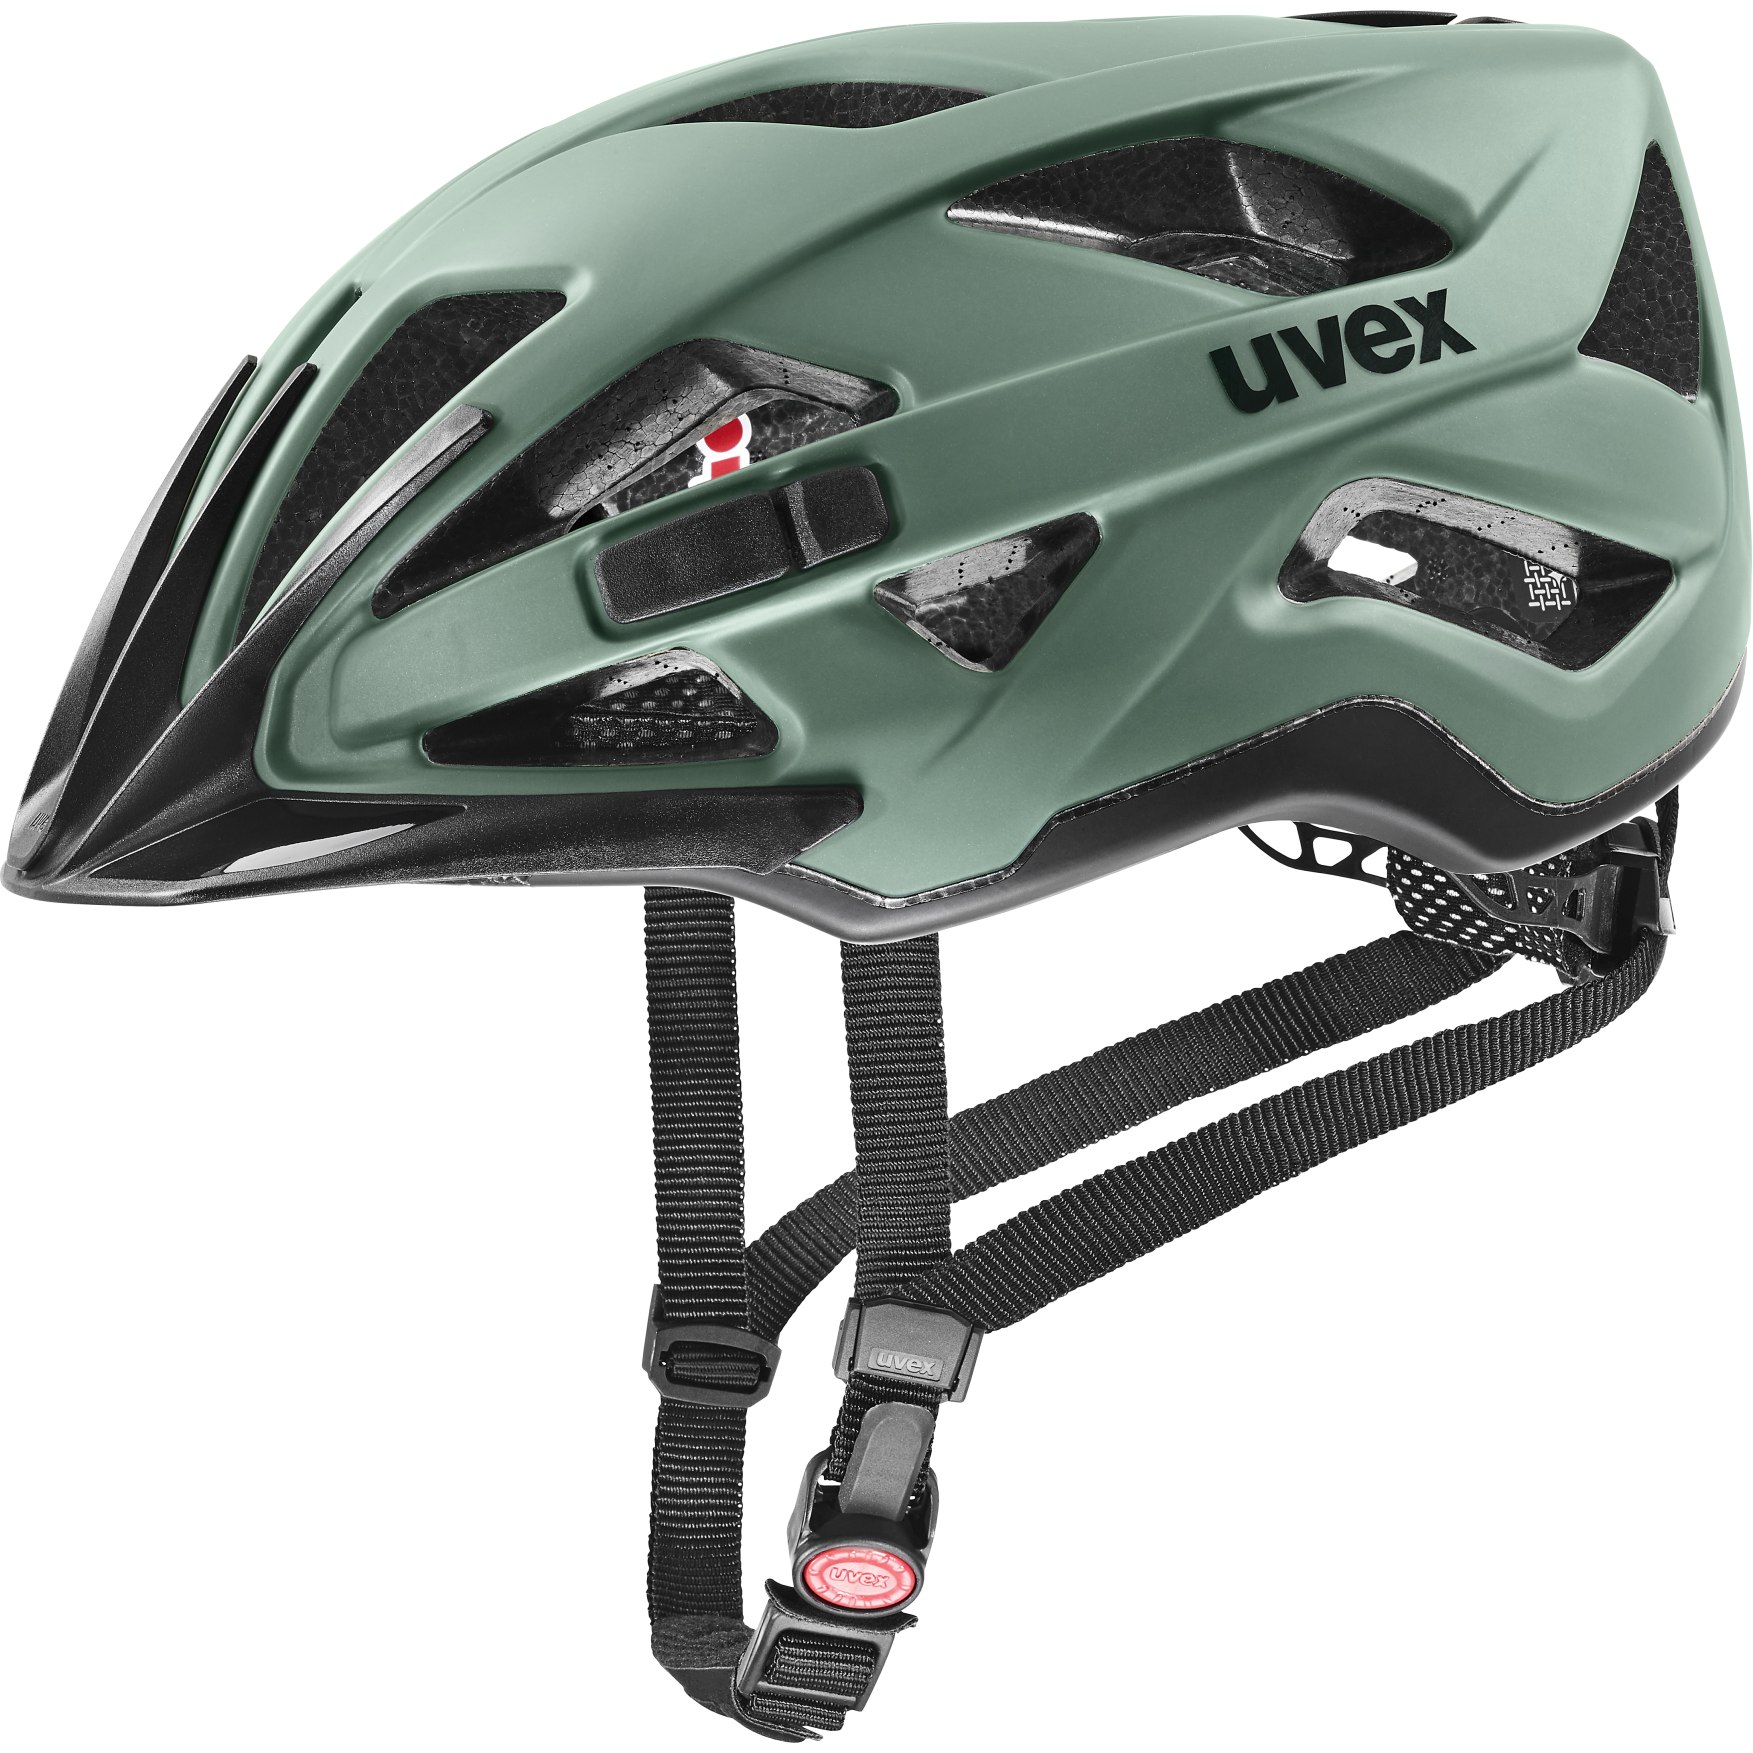 Produktbild von Uvex active cc Helm - moss green-black matt